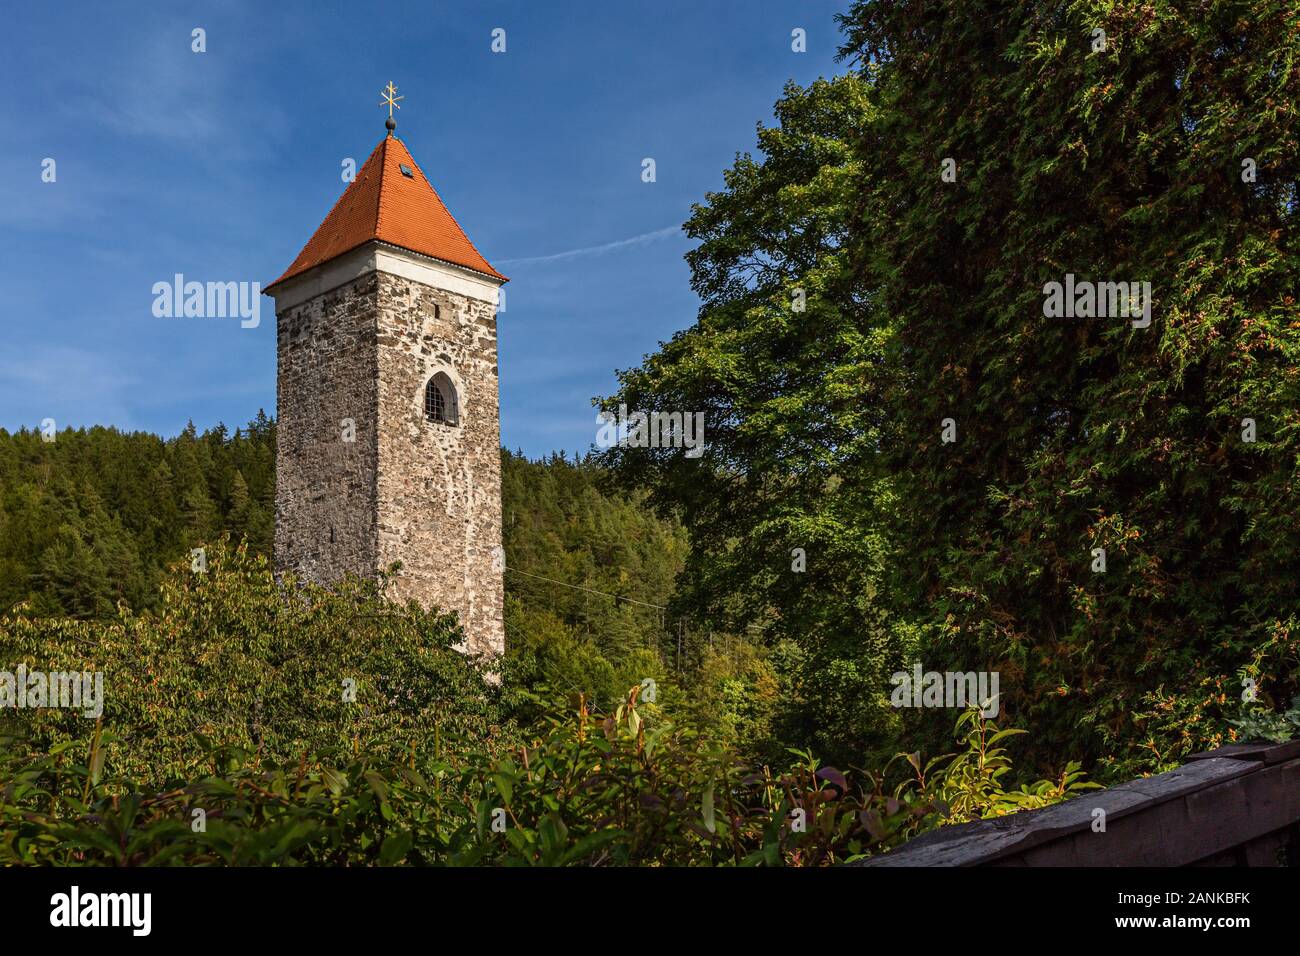 Nejdek/Tschechische Republik - 15. September 2019: einen steinernen Turm mit rotem Dach und Golden Cross ist ein Teil der ehemaligen Burg im 14. Jahrhundert erbaut. Stockfoto